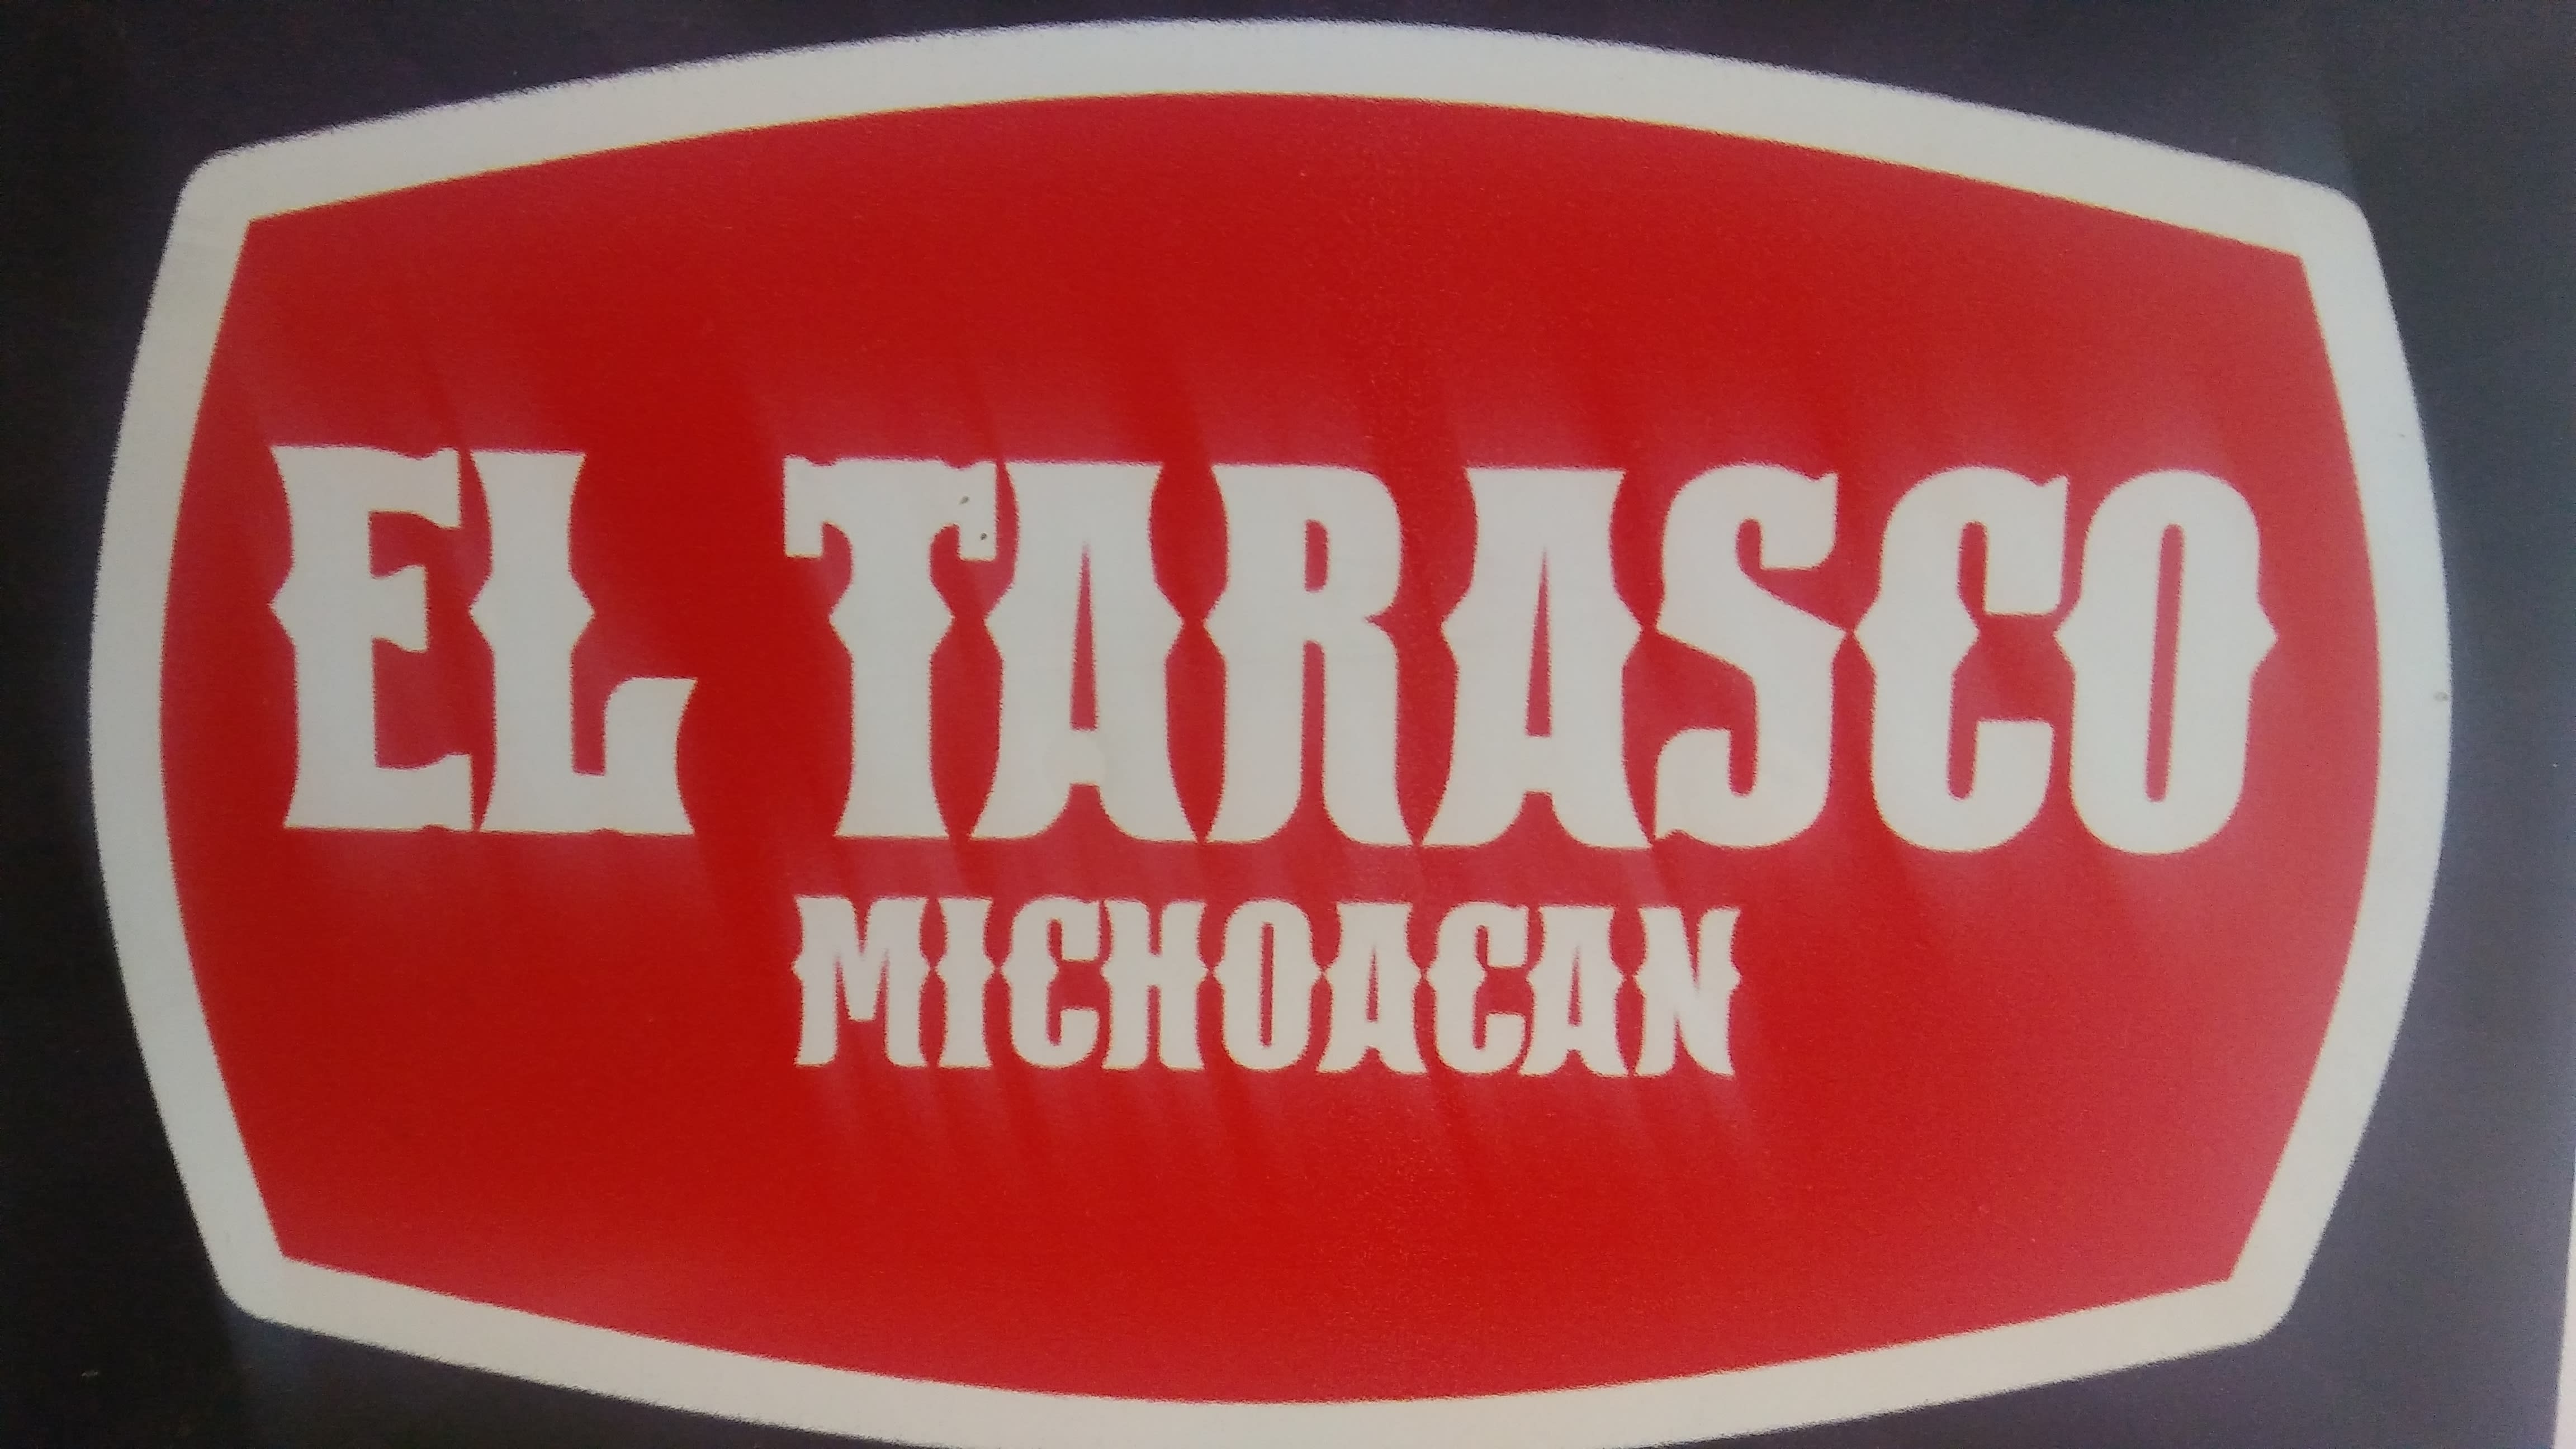 Tarasco